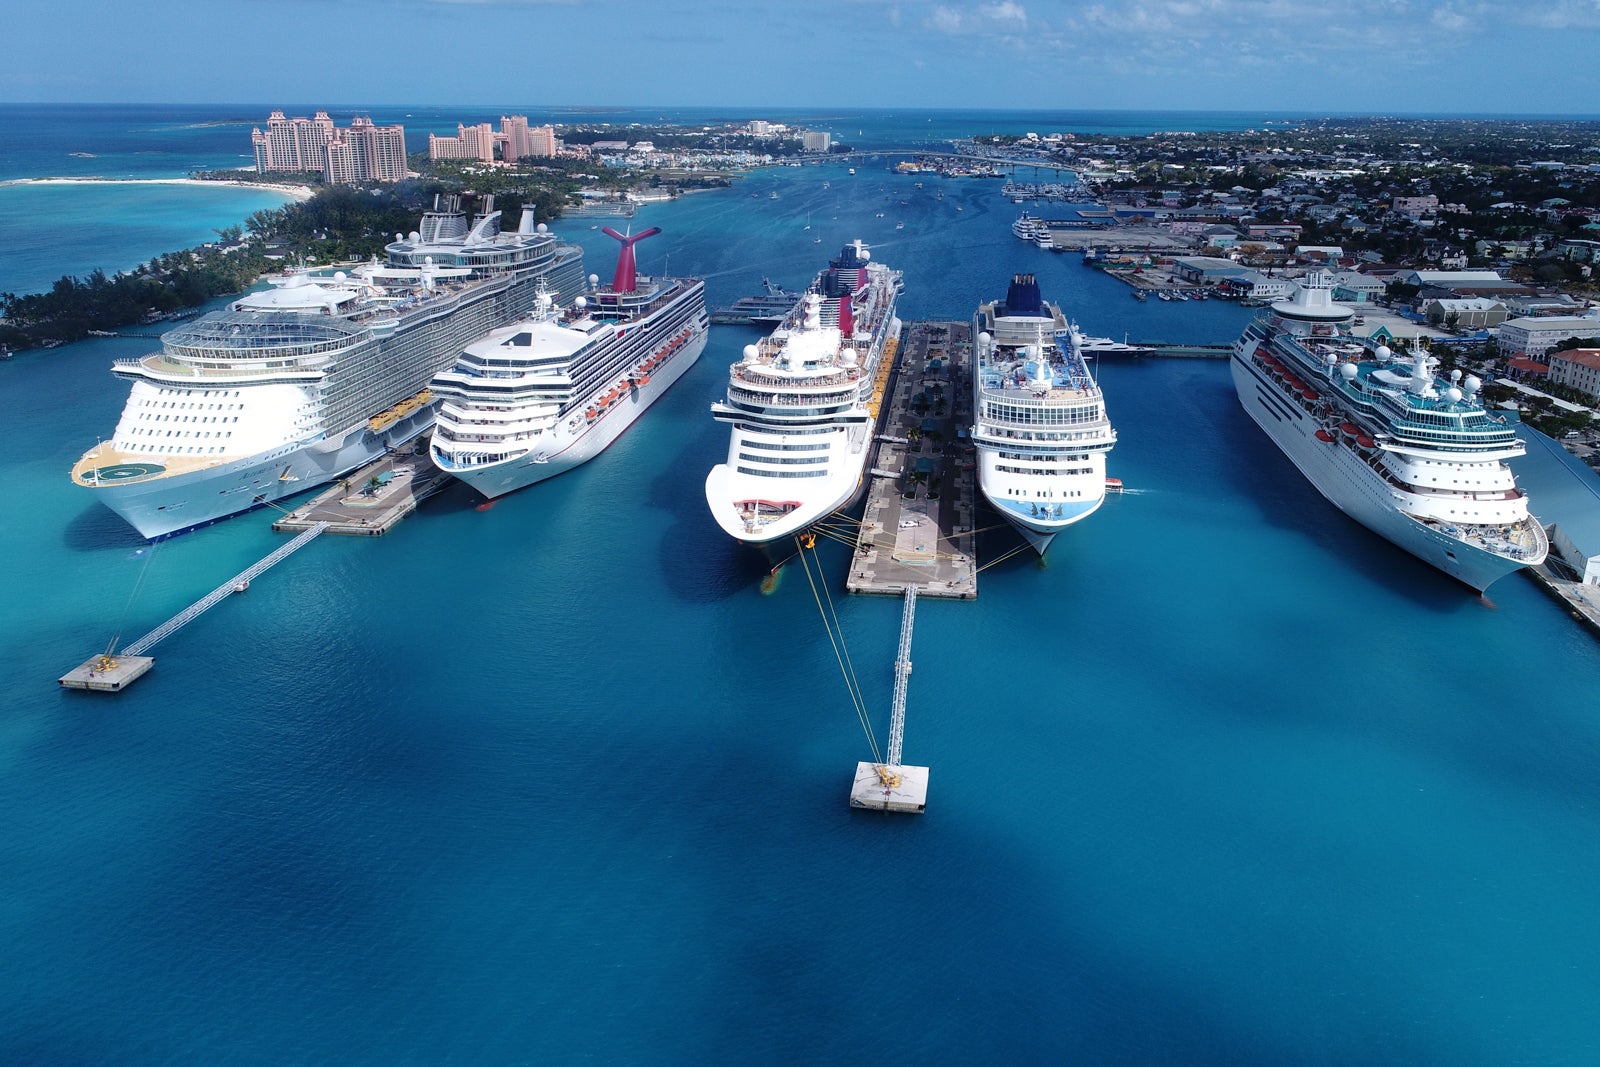 Cruise ships in Nassau, Bahamas. 